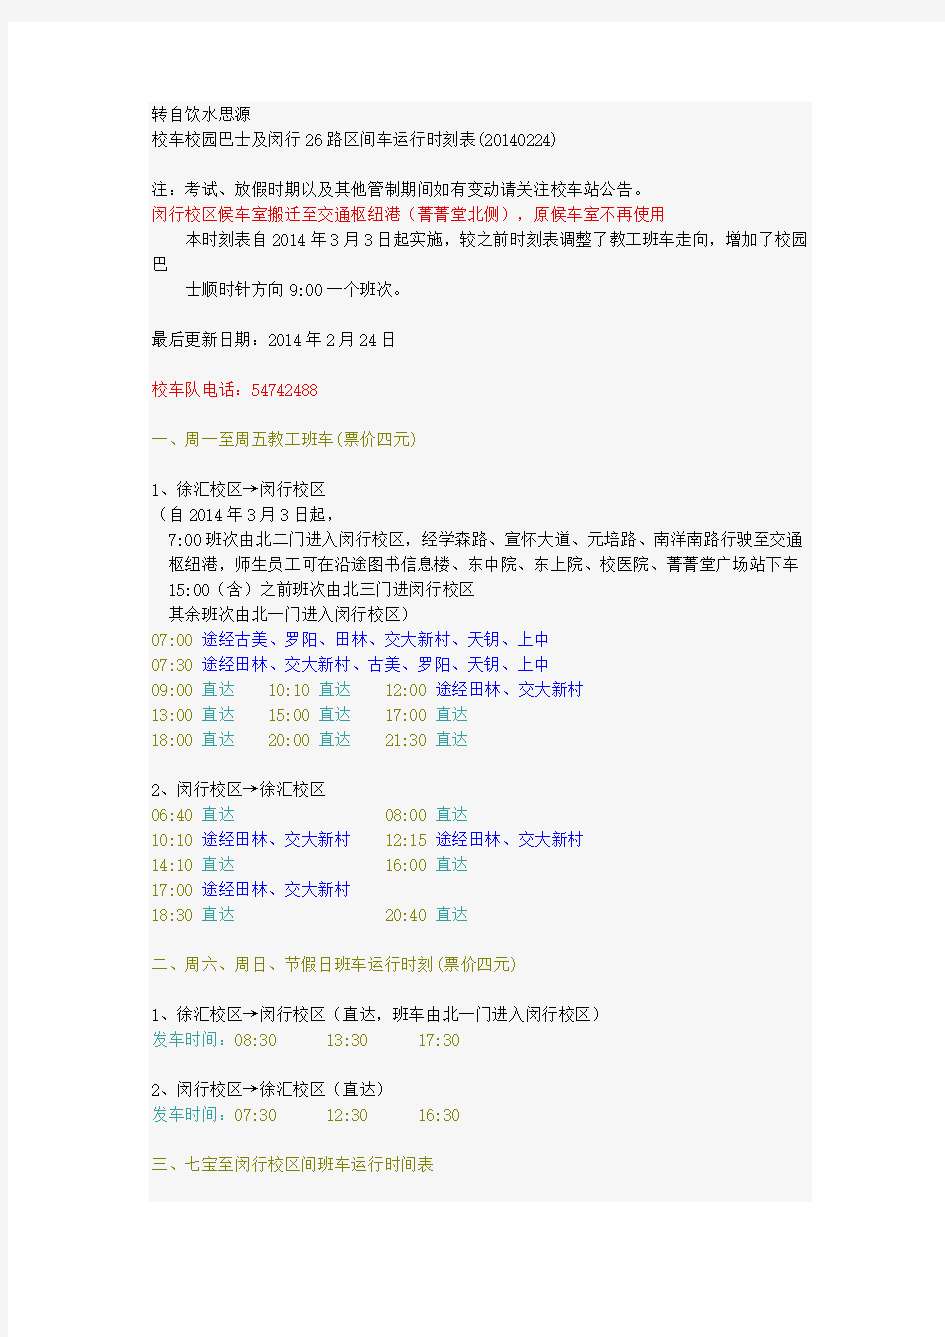 上海交大校车时刻表更新时间(2014.2)